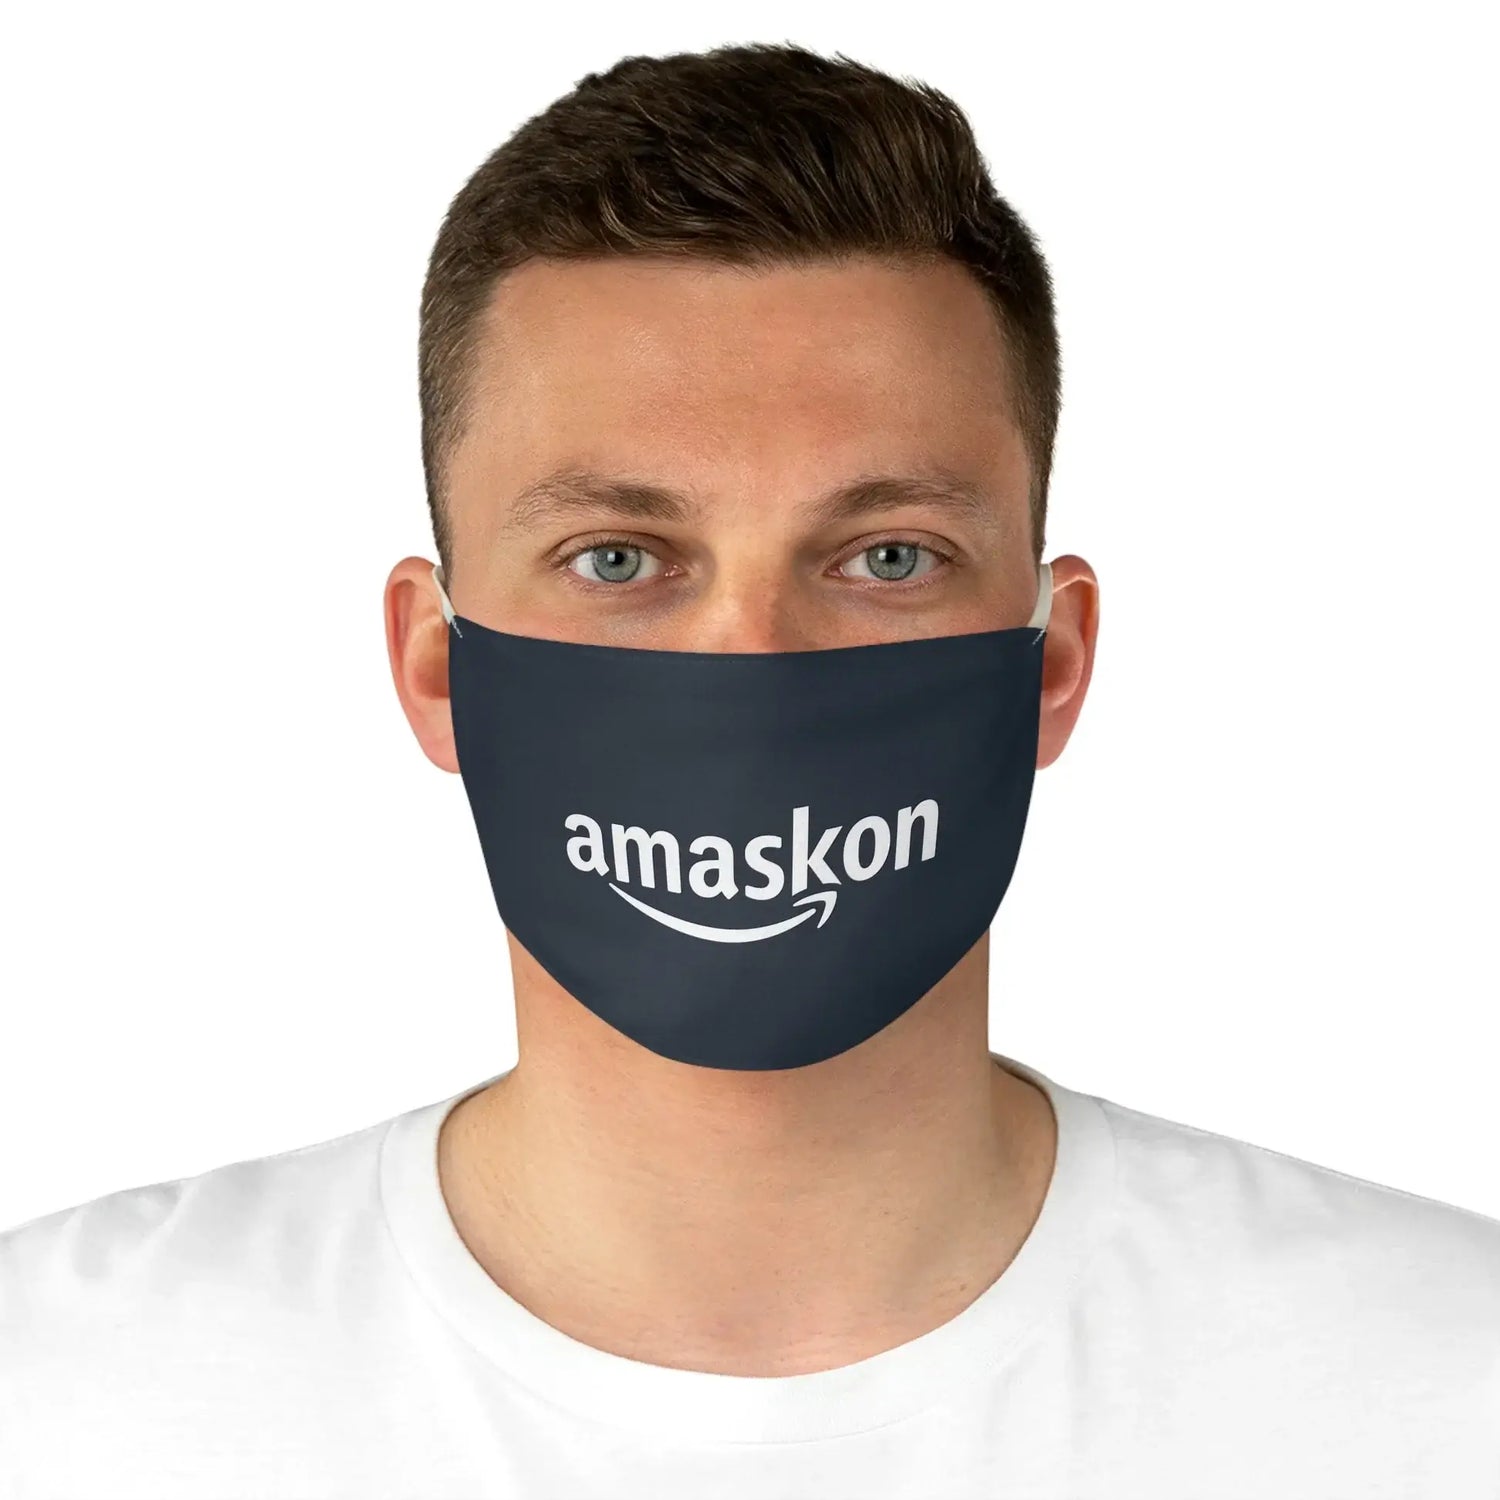 Amaskon Face Mask